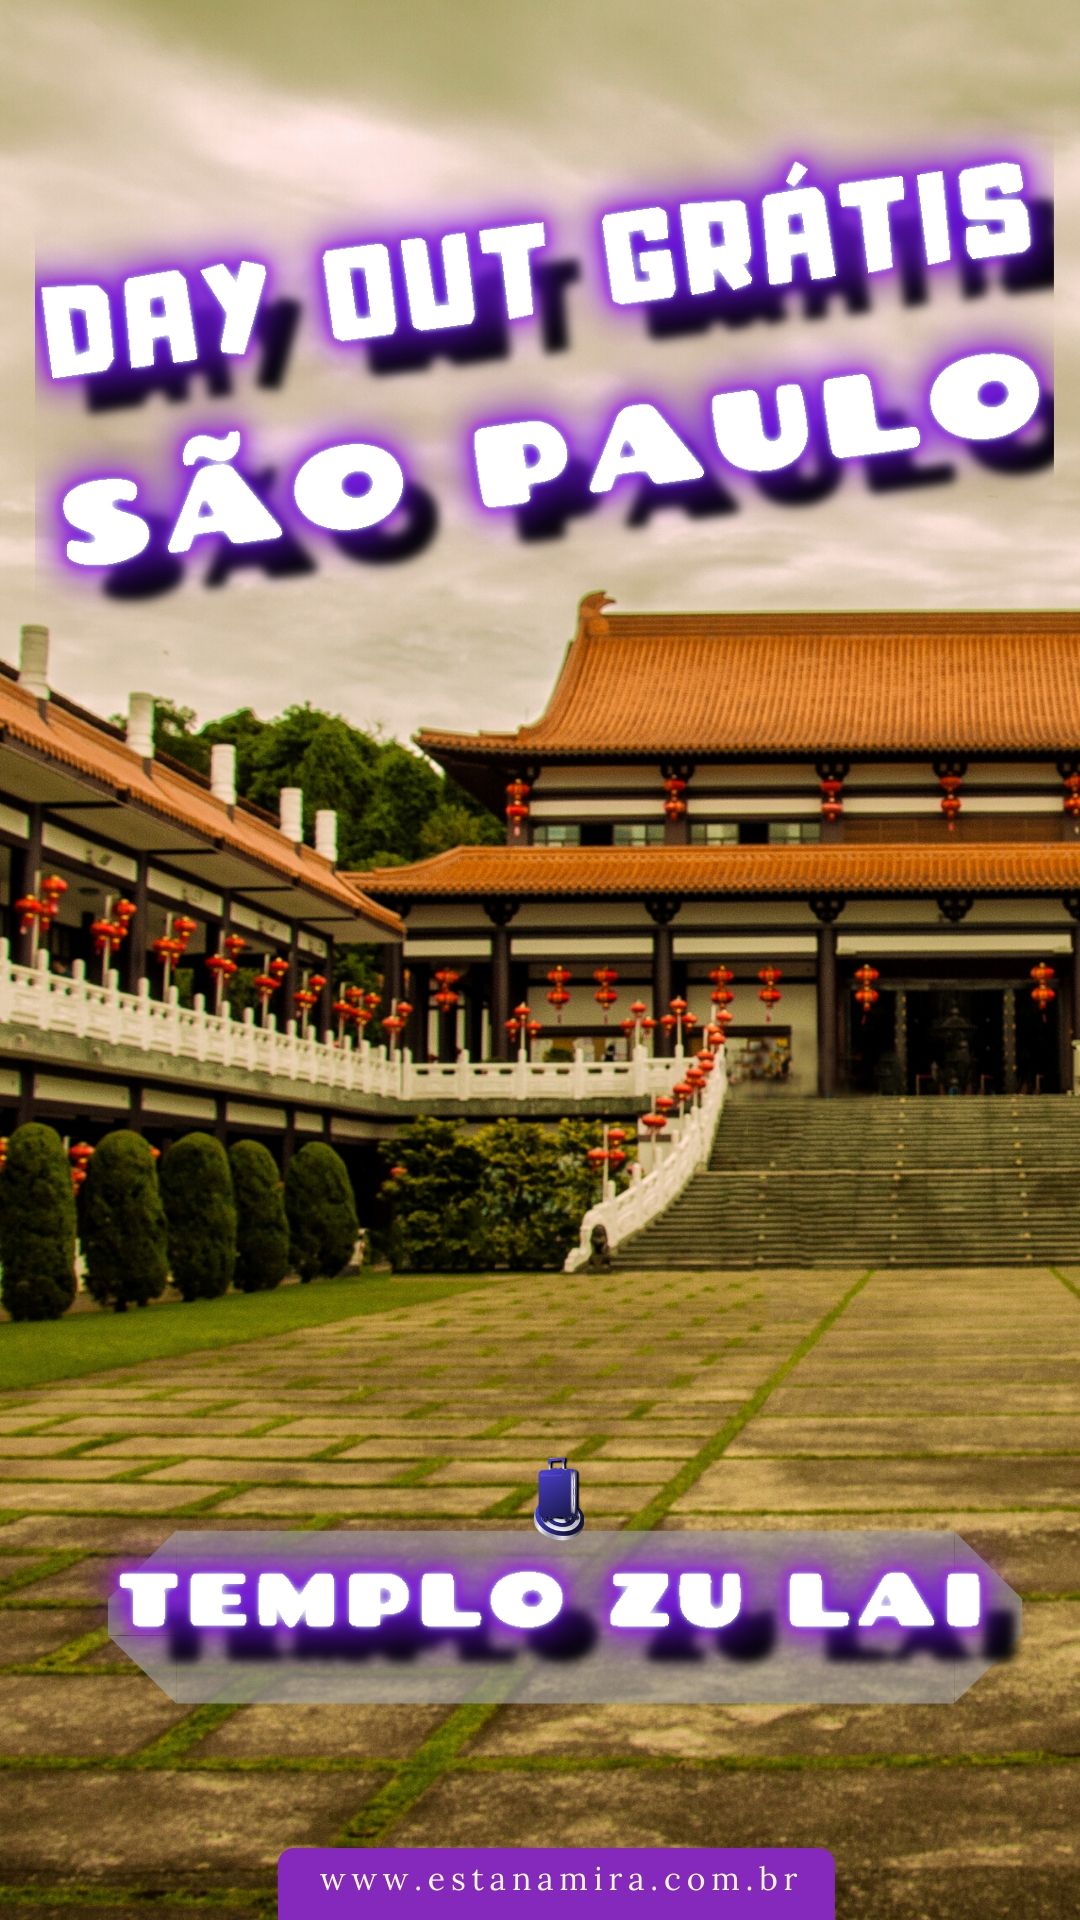 Templo Zu Lai, São Paulo, day out de paz e de tranquilidade